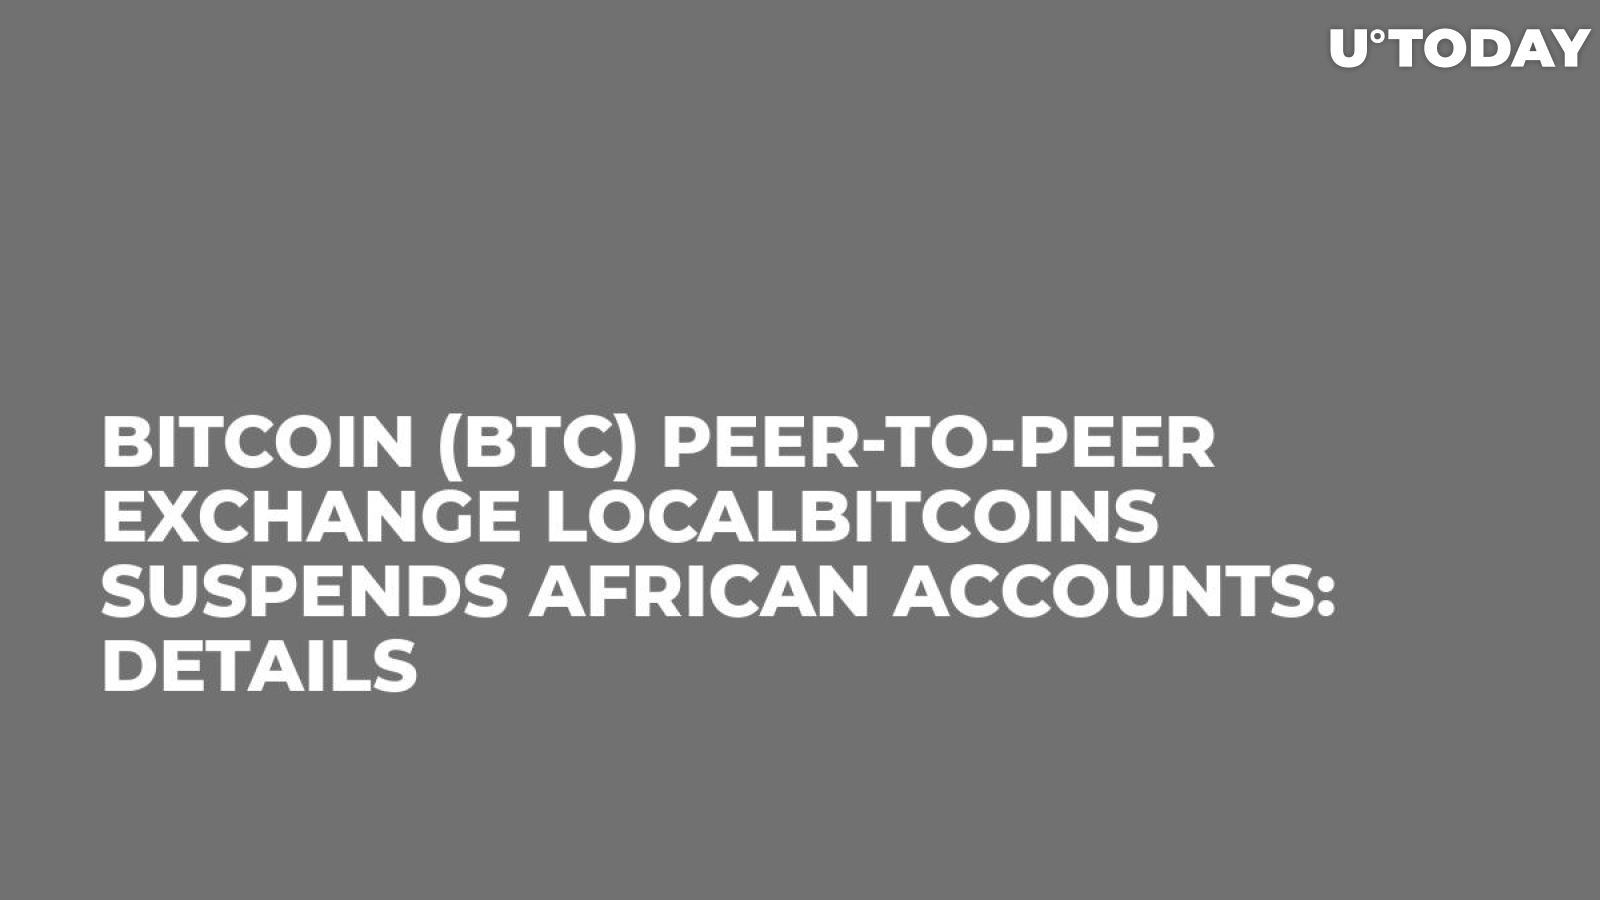 Bitcoin (BTC) Peer-to-peer Exchange LocalBitcoins Suspends African Accounts: Details